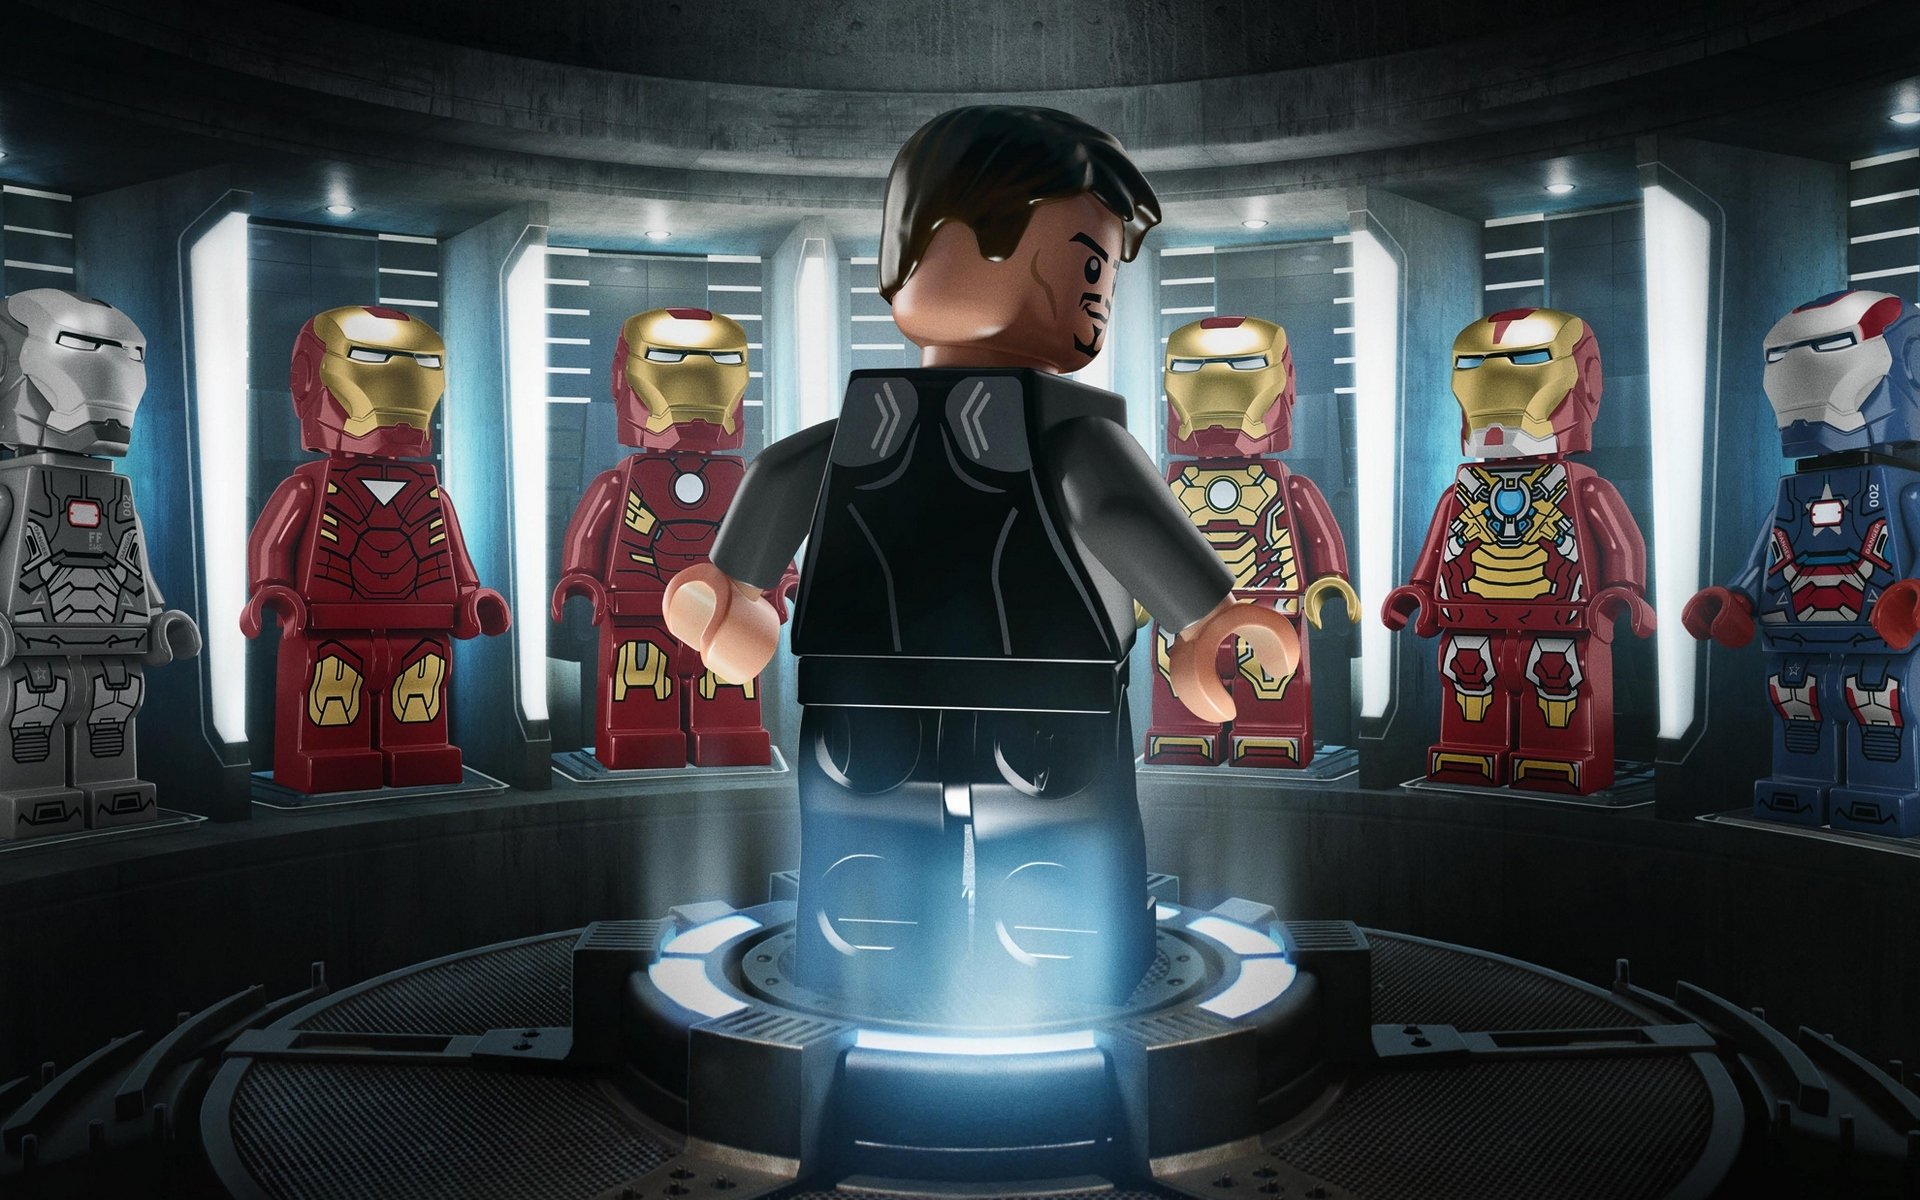 Lego marvel супер героев - обои в разделе Технологии.